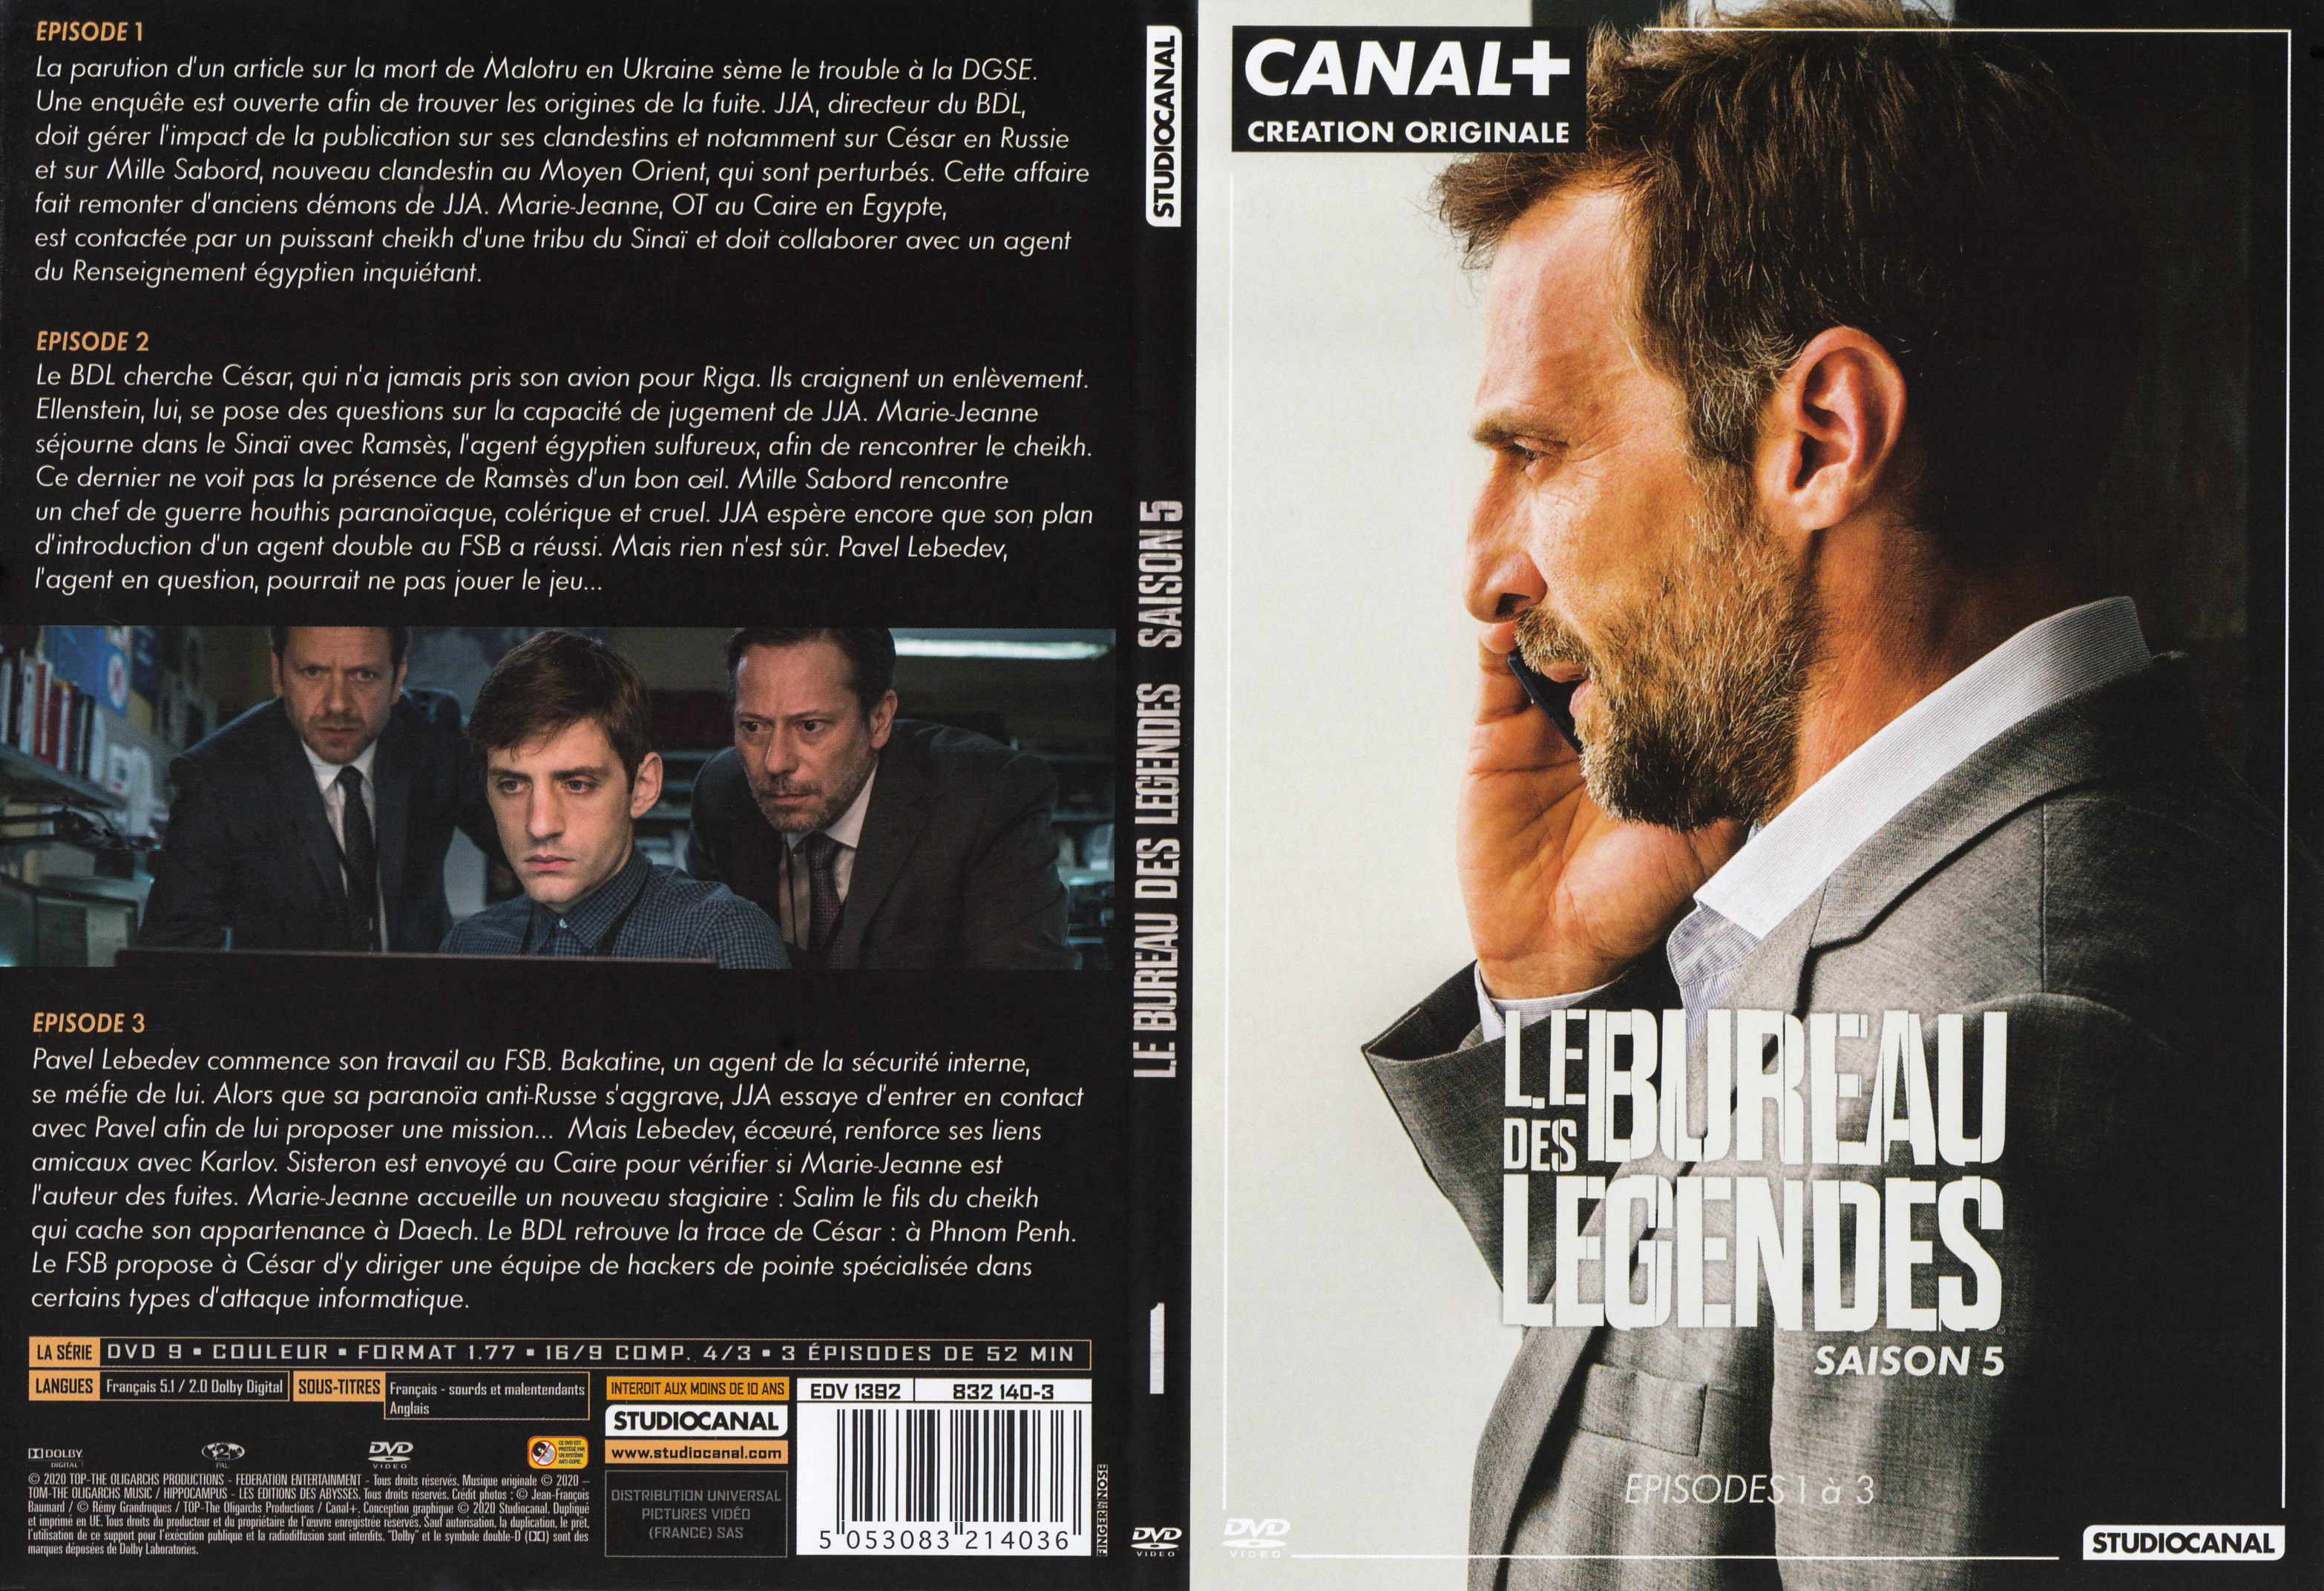 Jaquette DVD Le Bureau des lgendes Saison 5 DVD 1